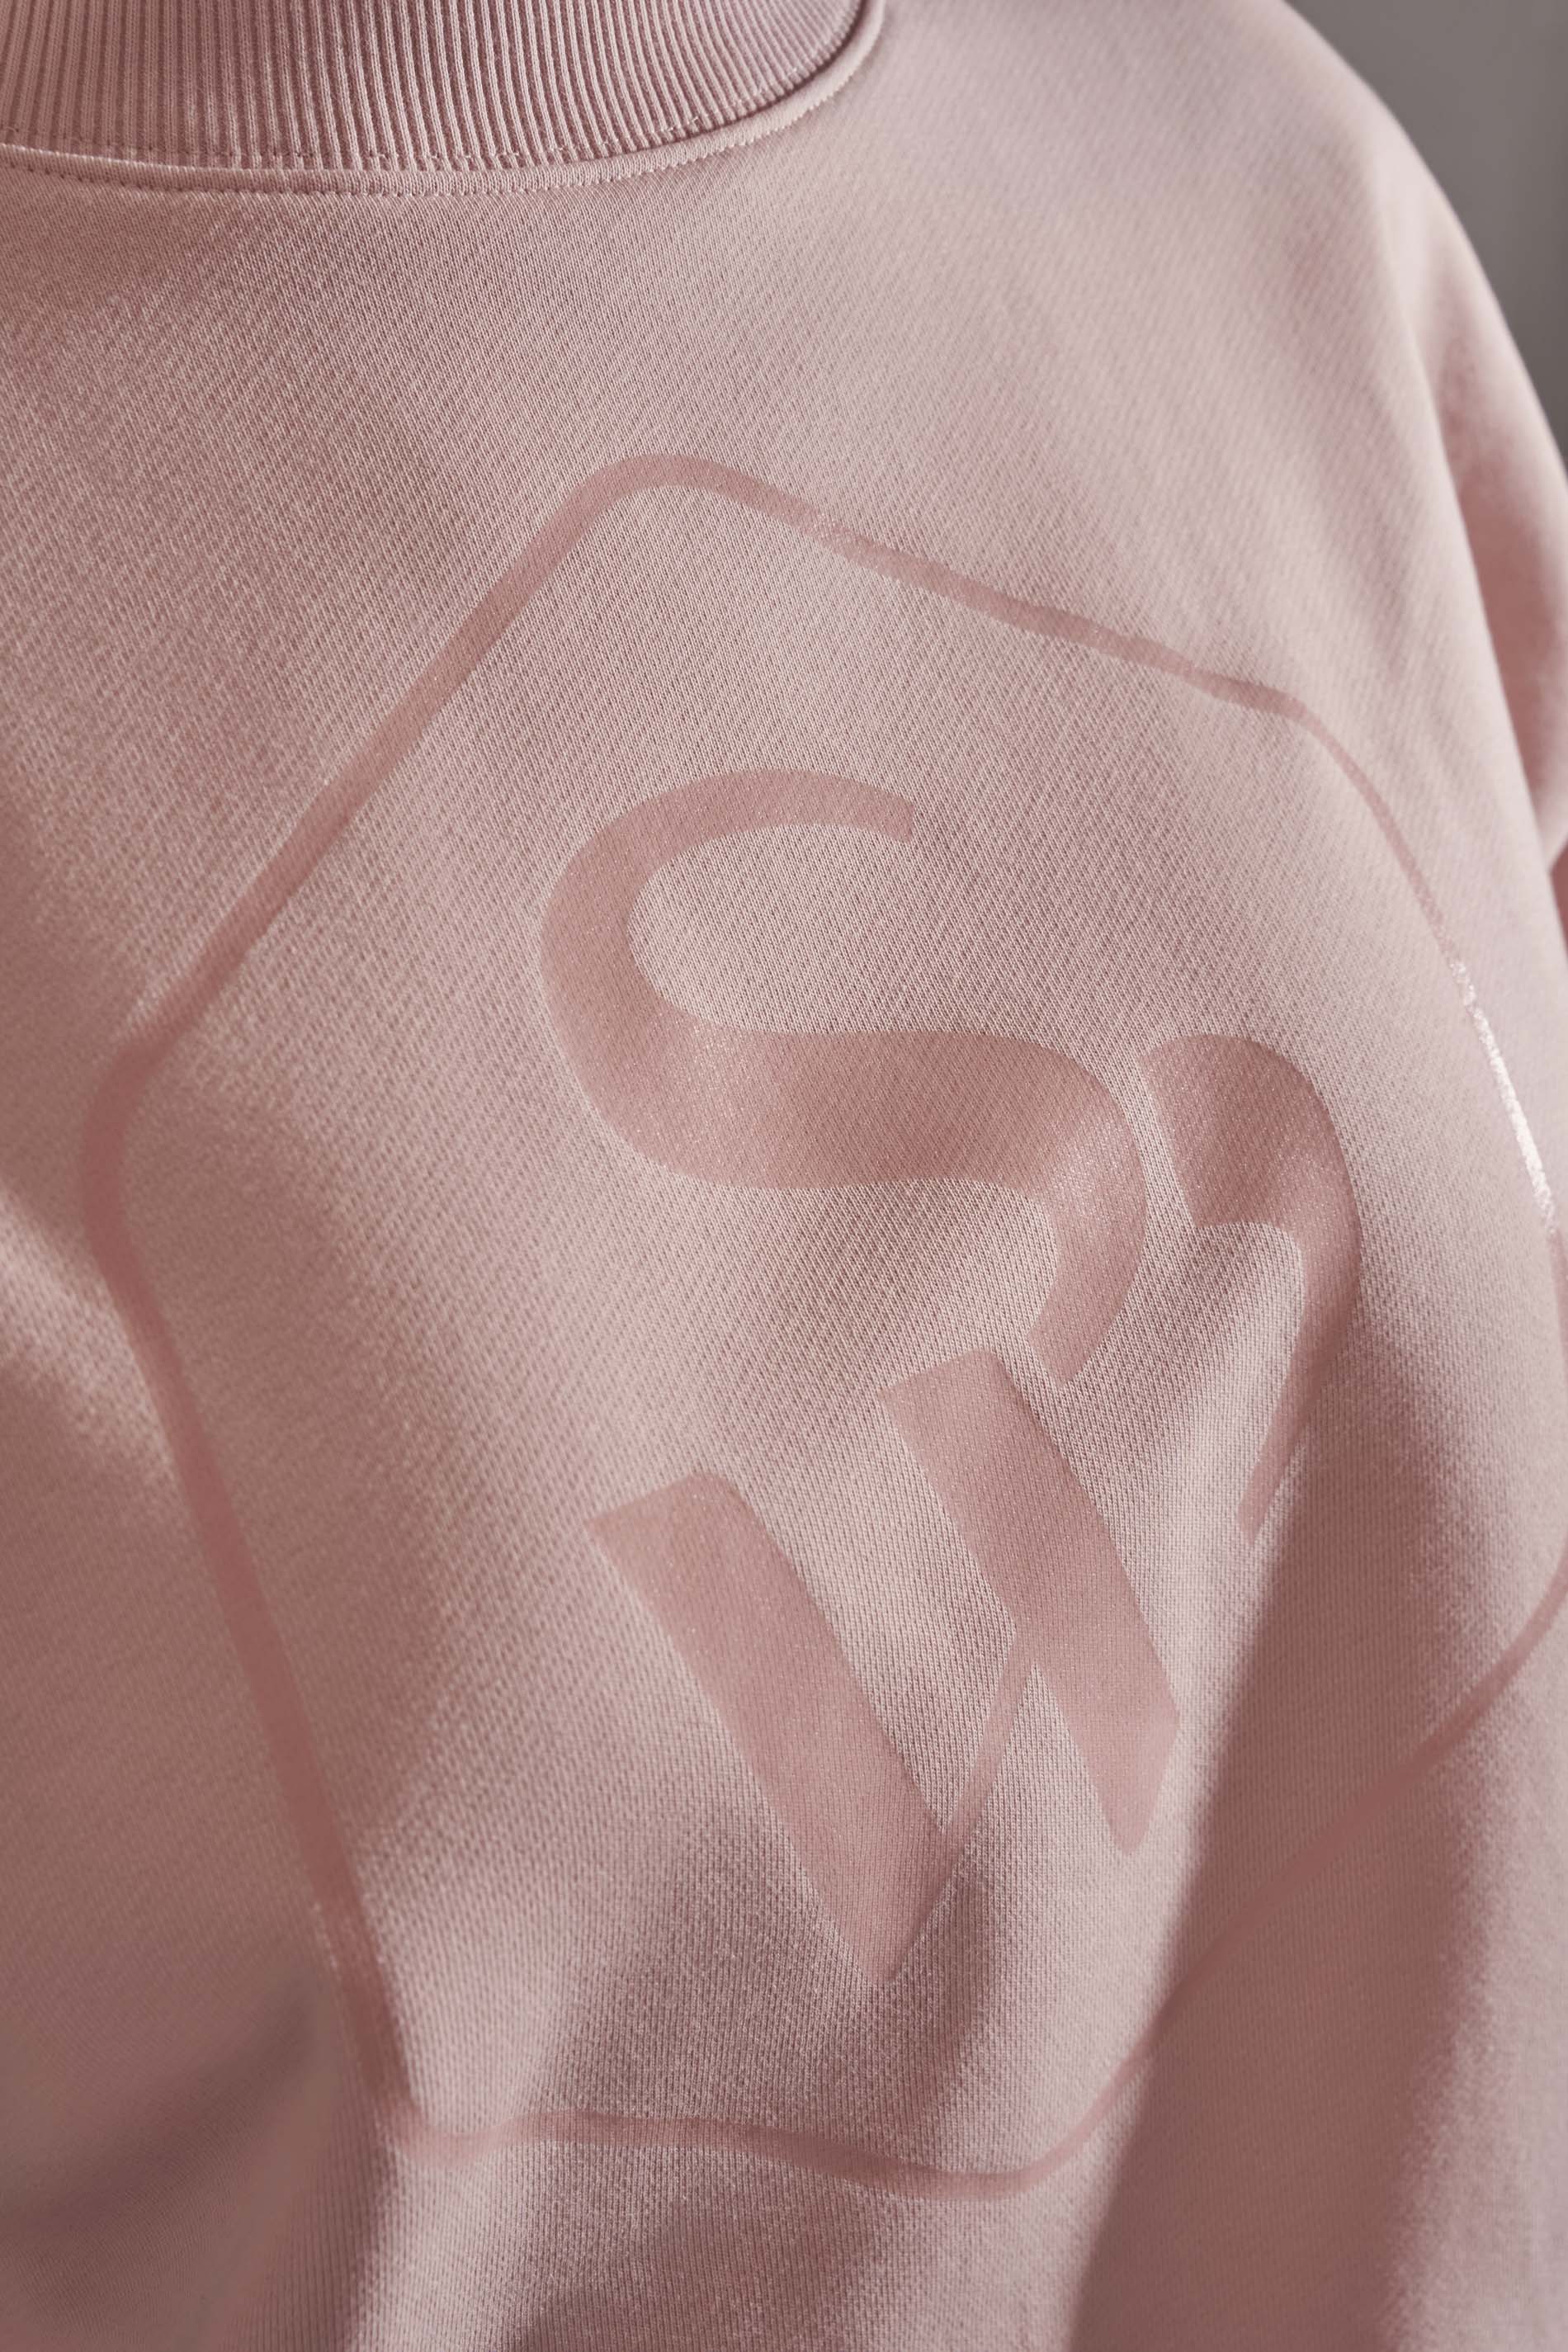 Sweatshirt Serie Cozy Detailansicht 01 | mey®